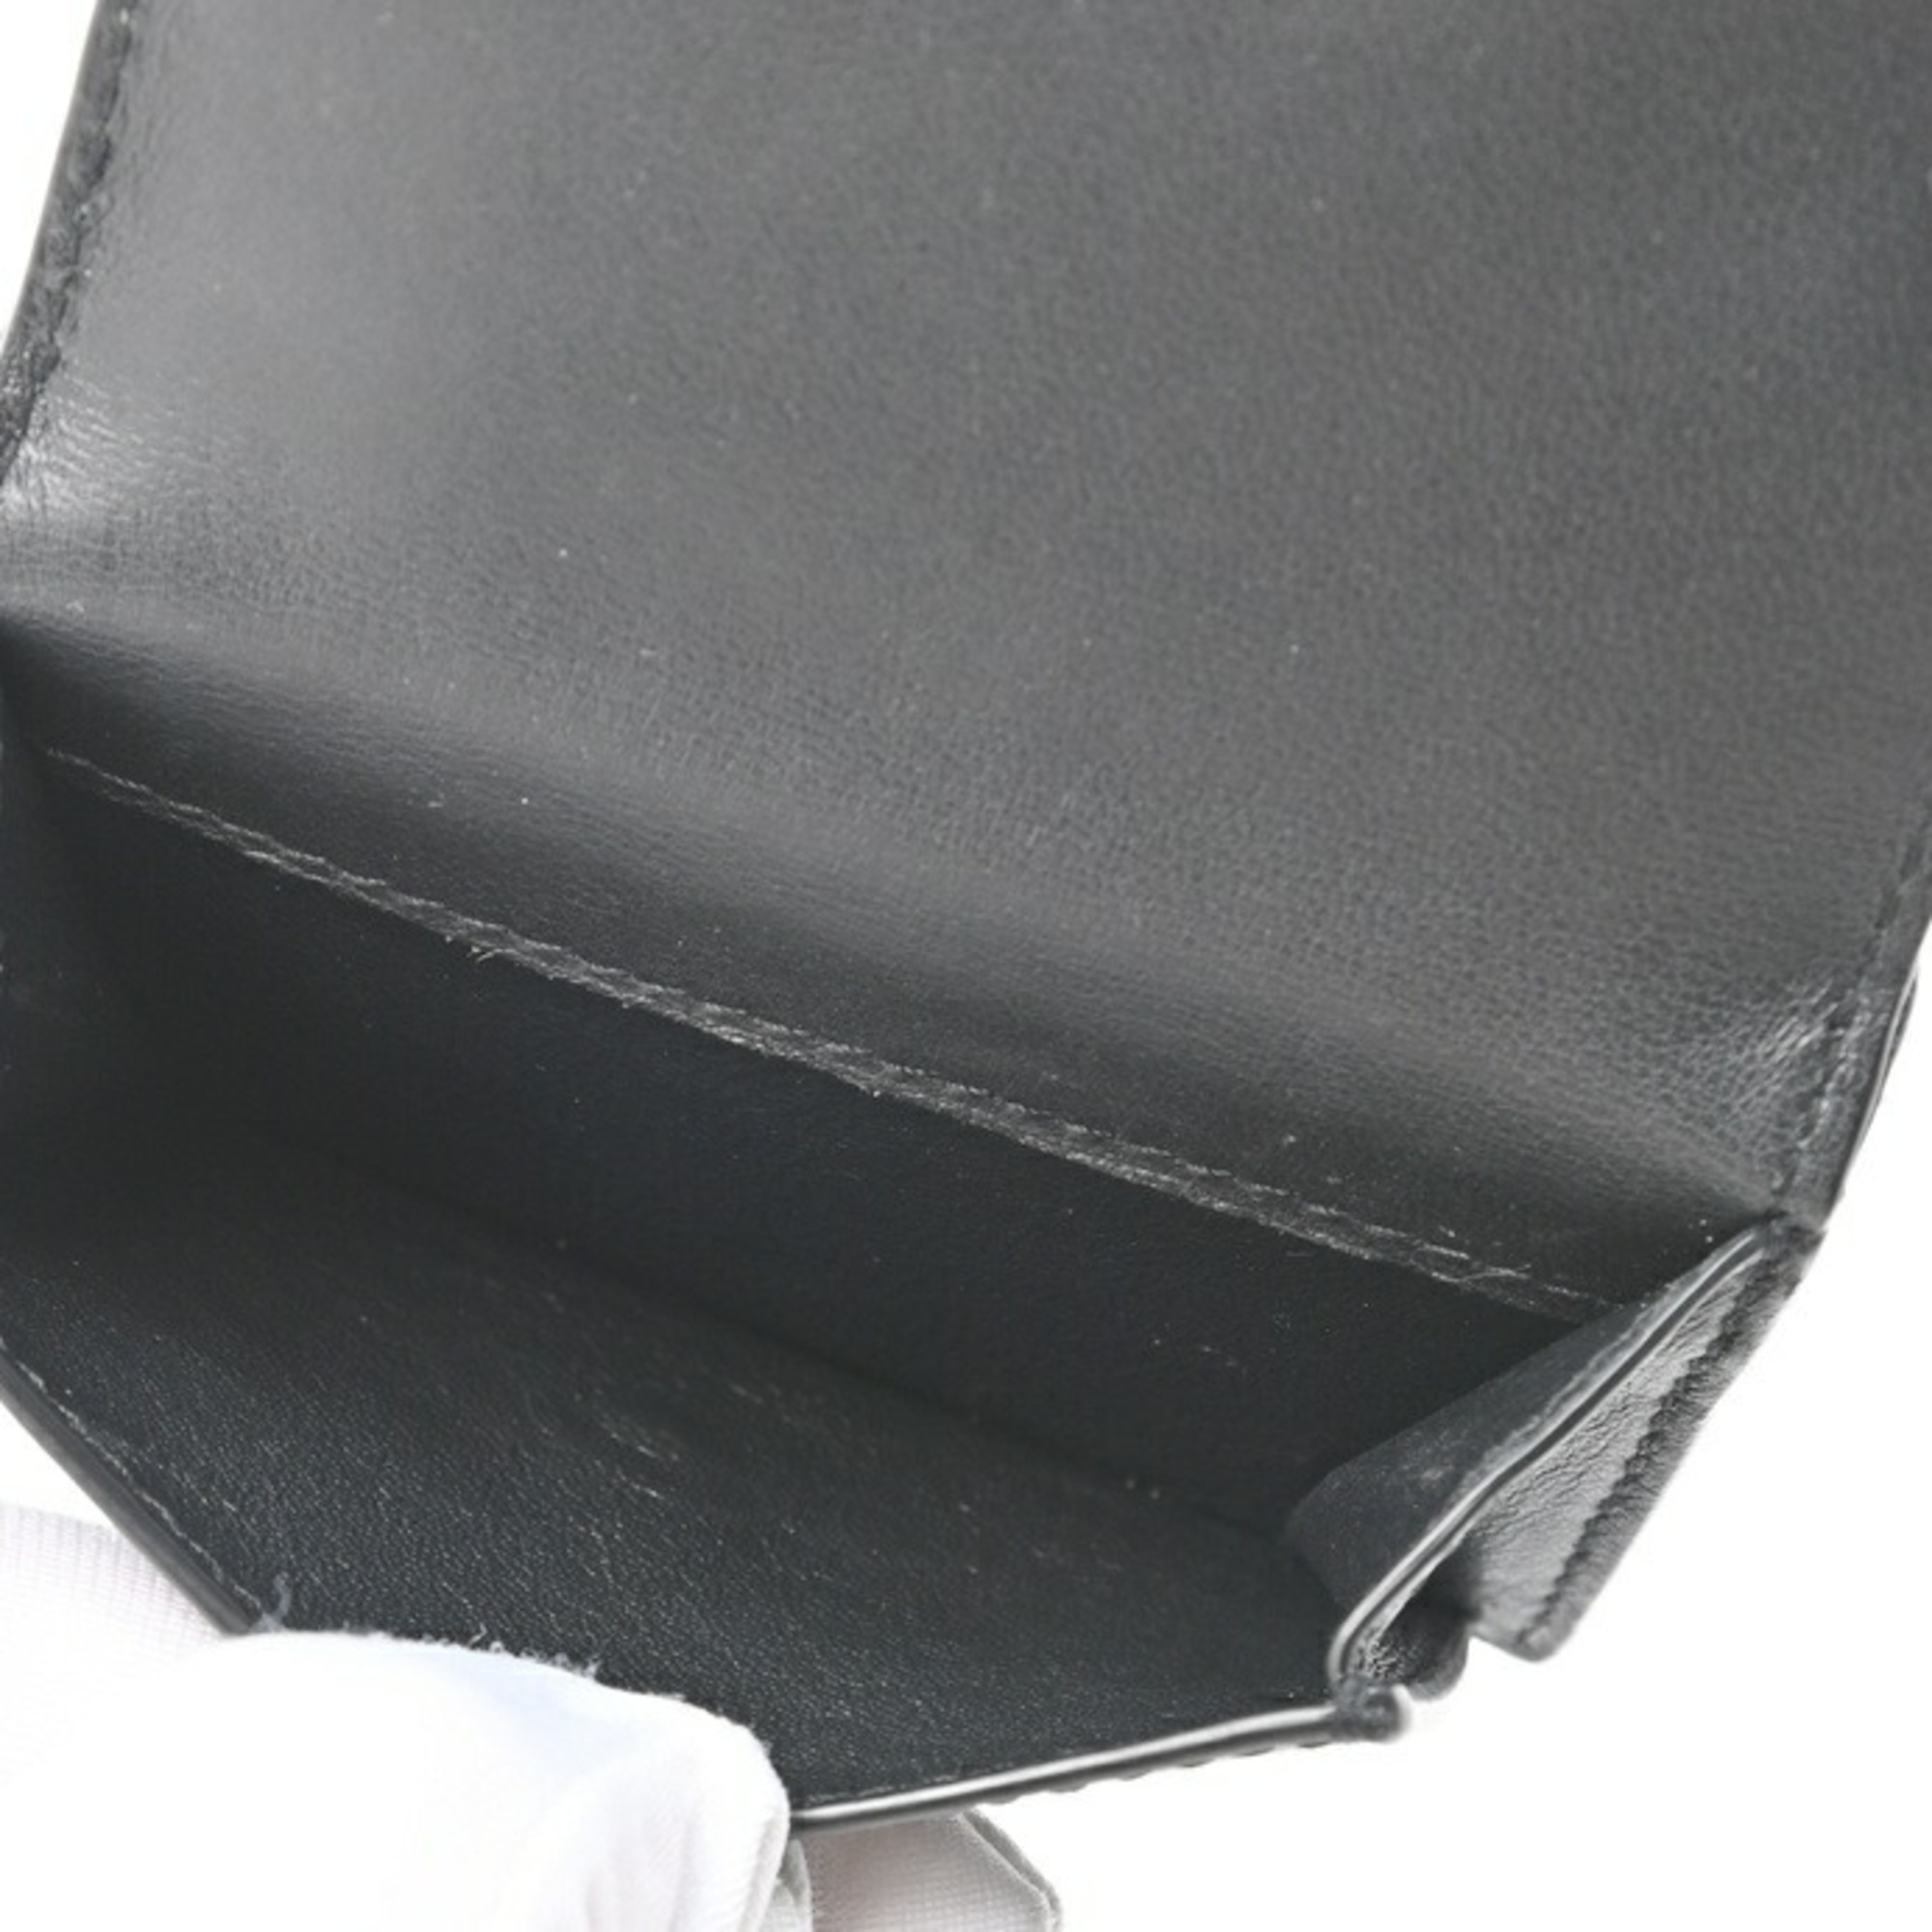 Saint Laurent Petite Wallet 459996 Grained de Poudre Textured Leather S-155269